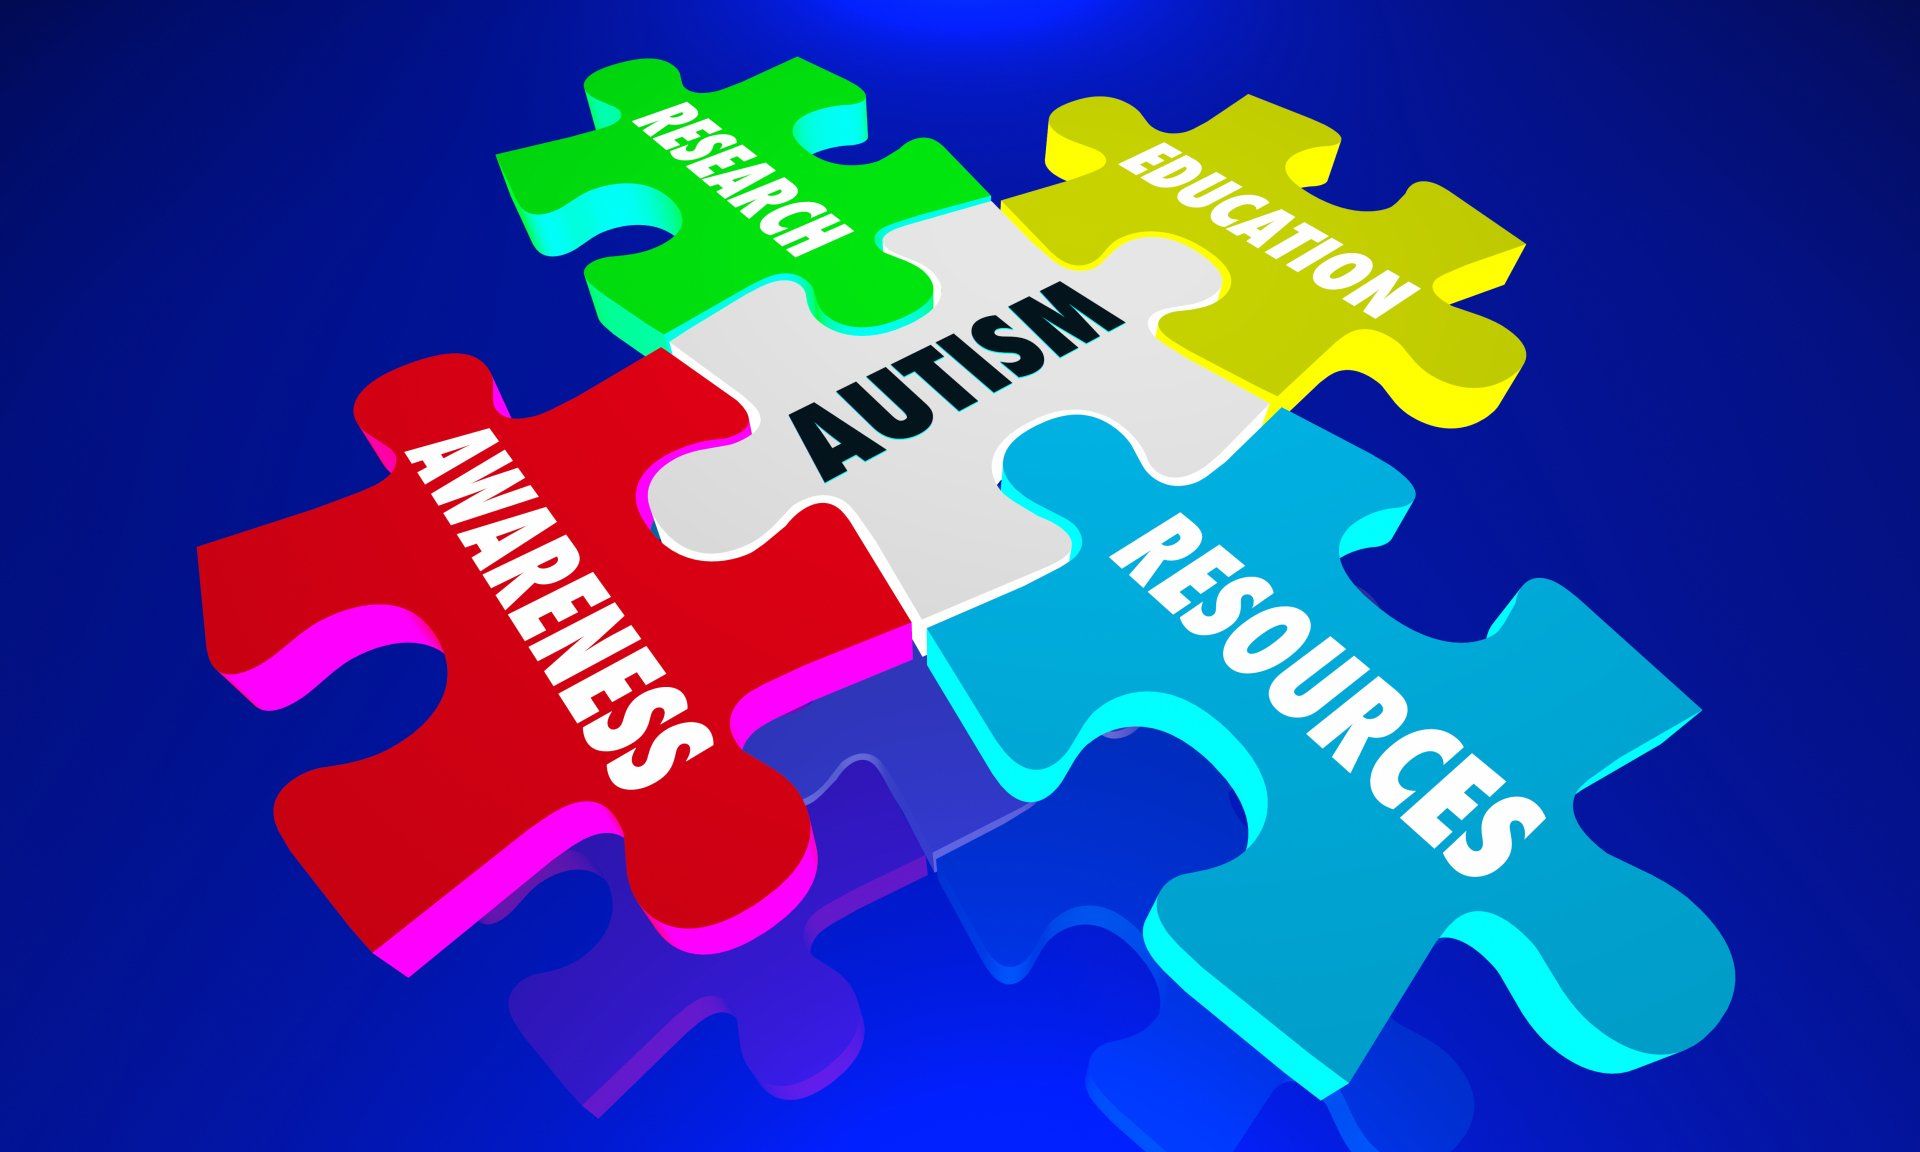 Signe Language for Autism